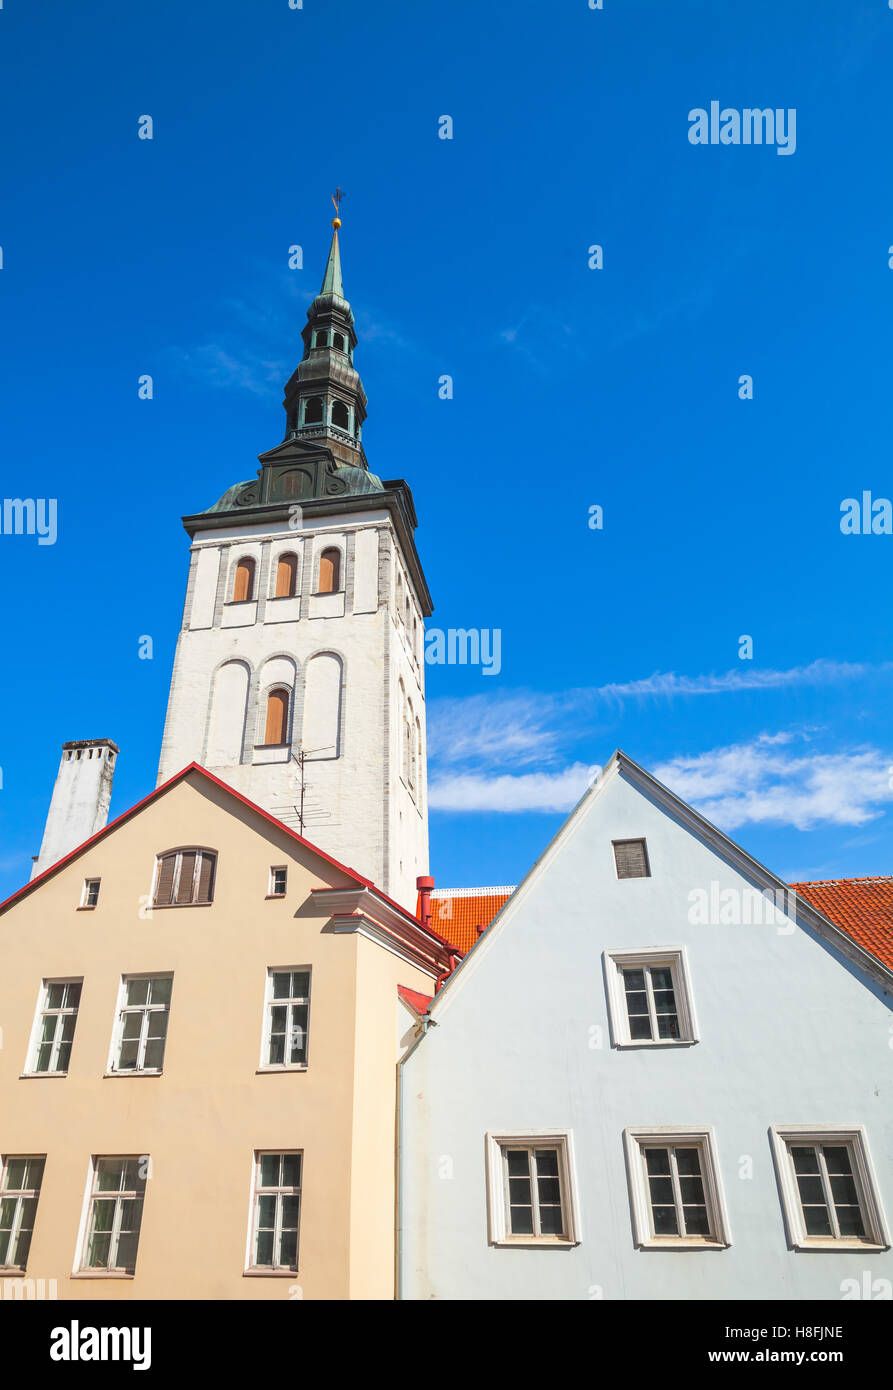 Altstadt von Tallinn, Estland. Vertikale Skyline mit bunten Häusern und St. Nicholas Church, Niguliste Museum Stockfoto